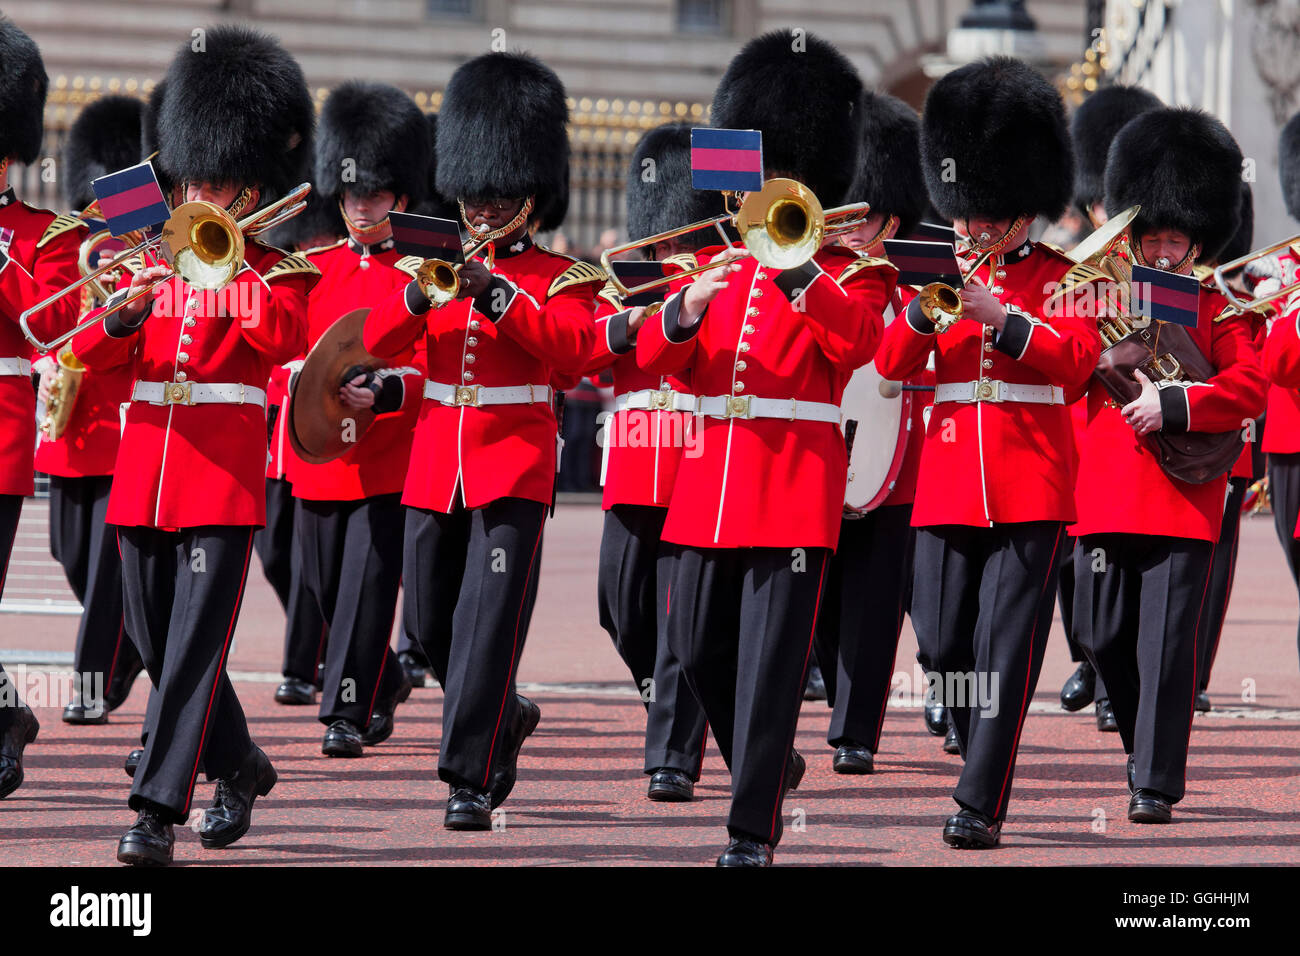 Relève de la garde devant le palais de Buckingham, Londres, Angleterre, Royaume-Uni Banque D'Images